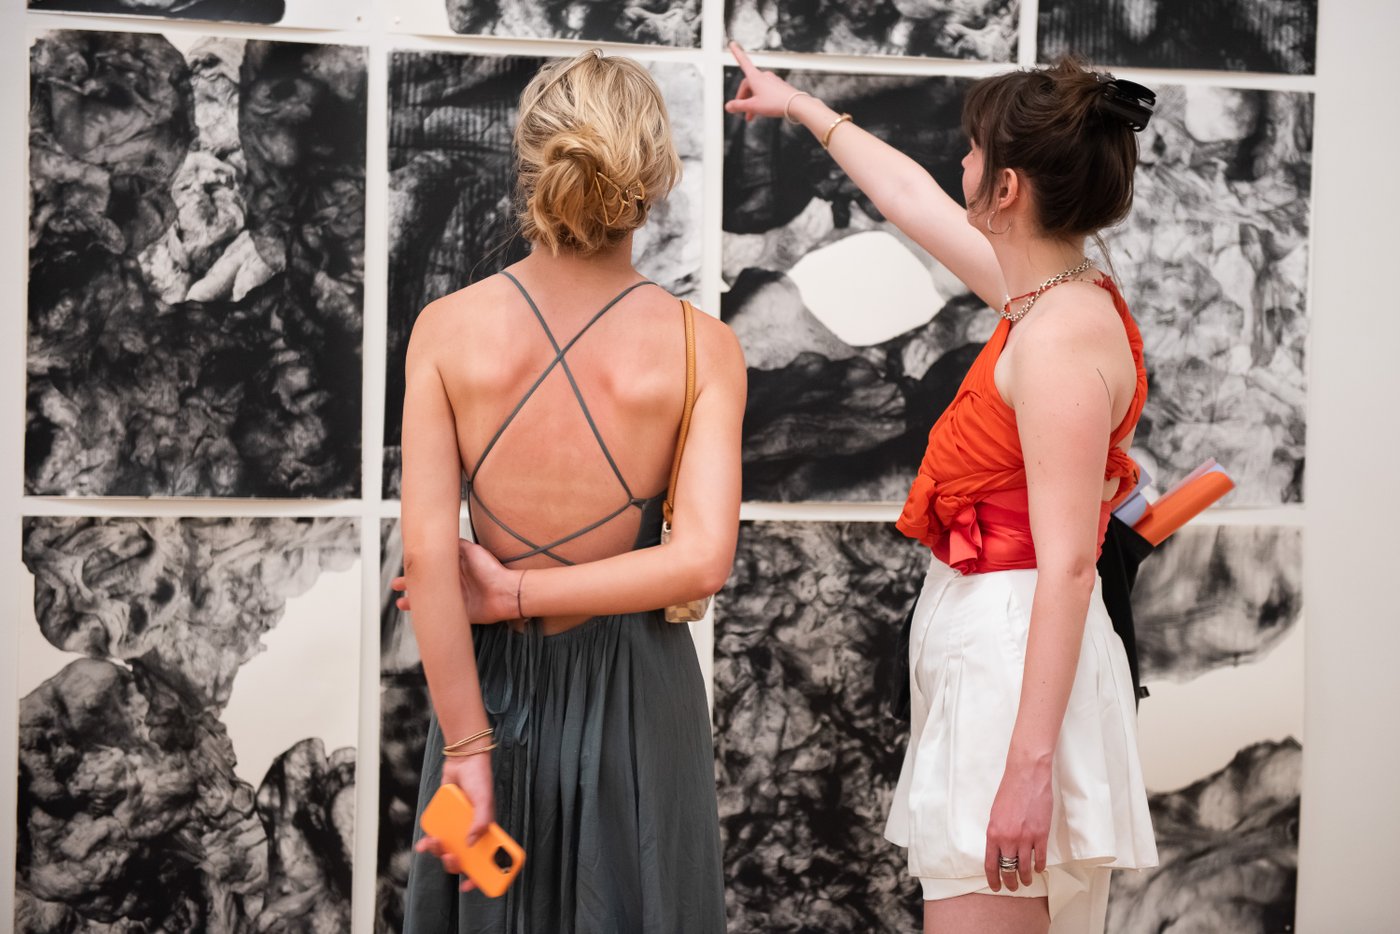 zwei Frauen stehen vor den Druckgrafiken an der Wand und deuten auf eines